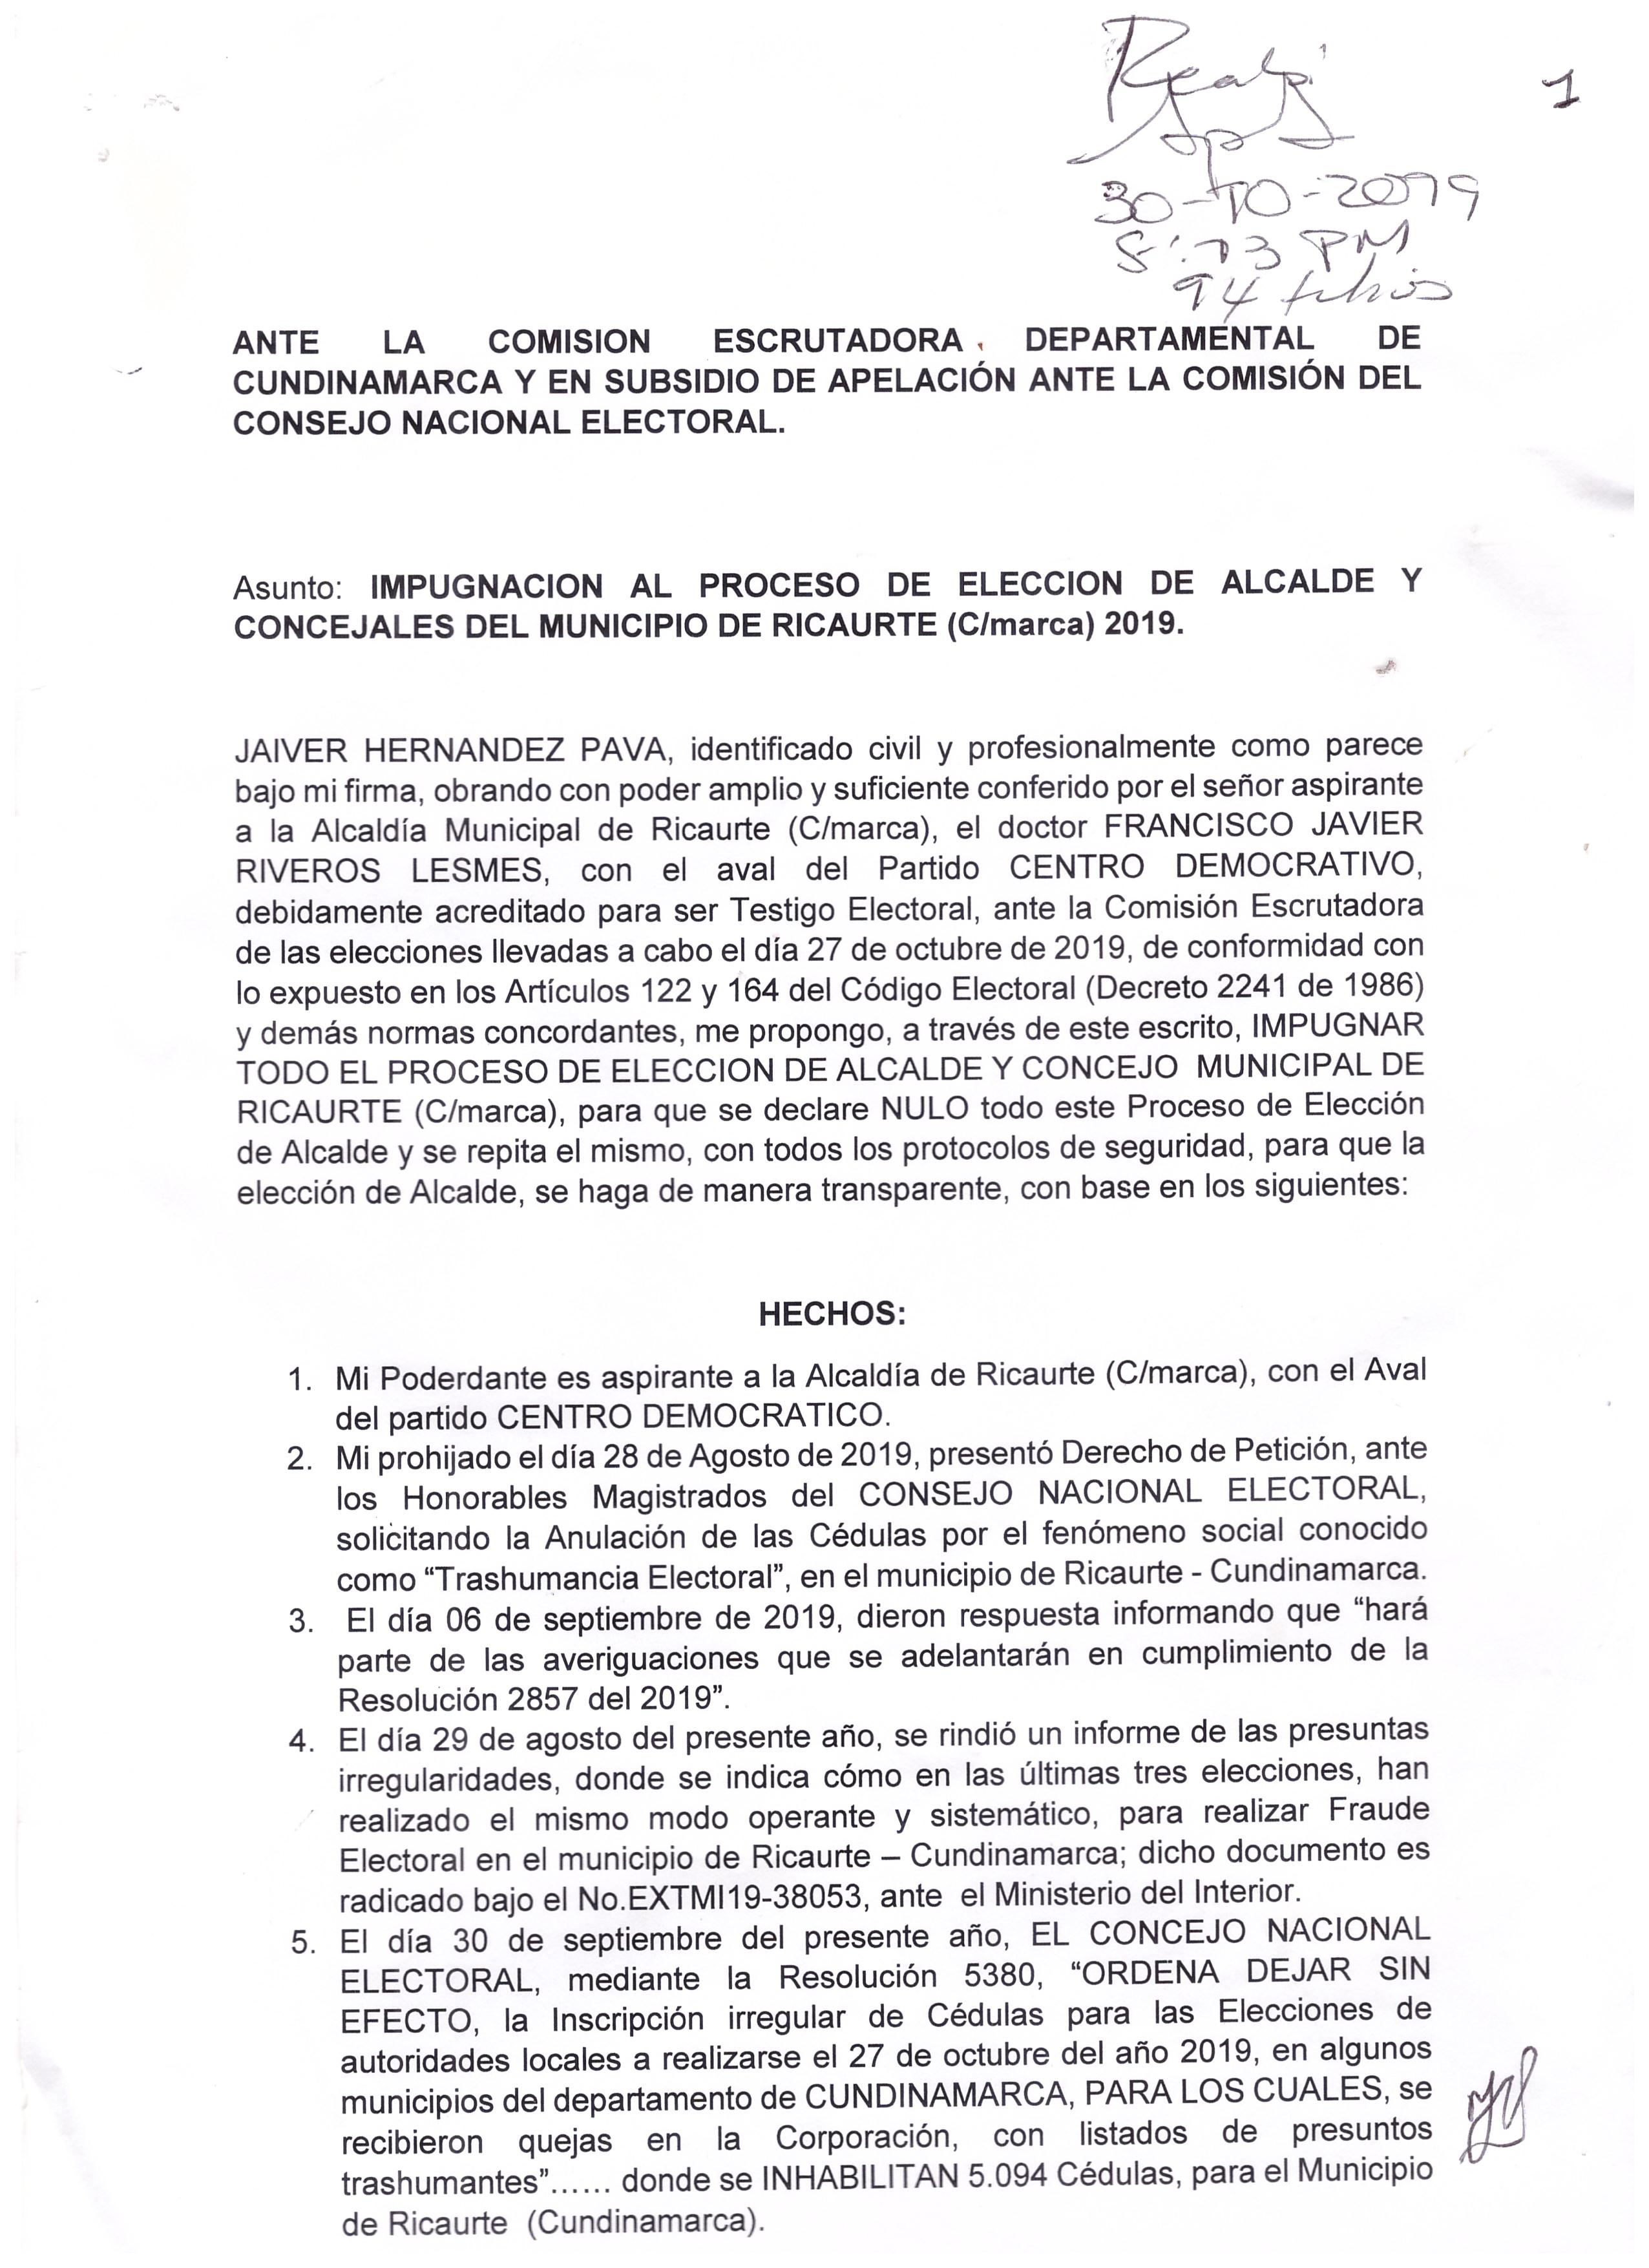 Impugnación al proceso de elección de Alcalde y concejales del municipio de Ricaurte (Cundinamarca) 2019. 